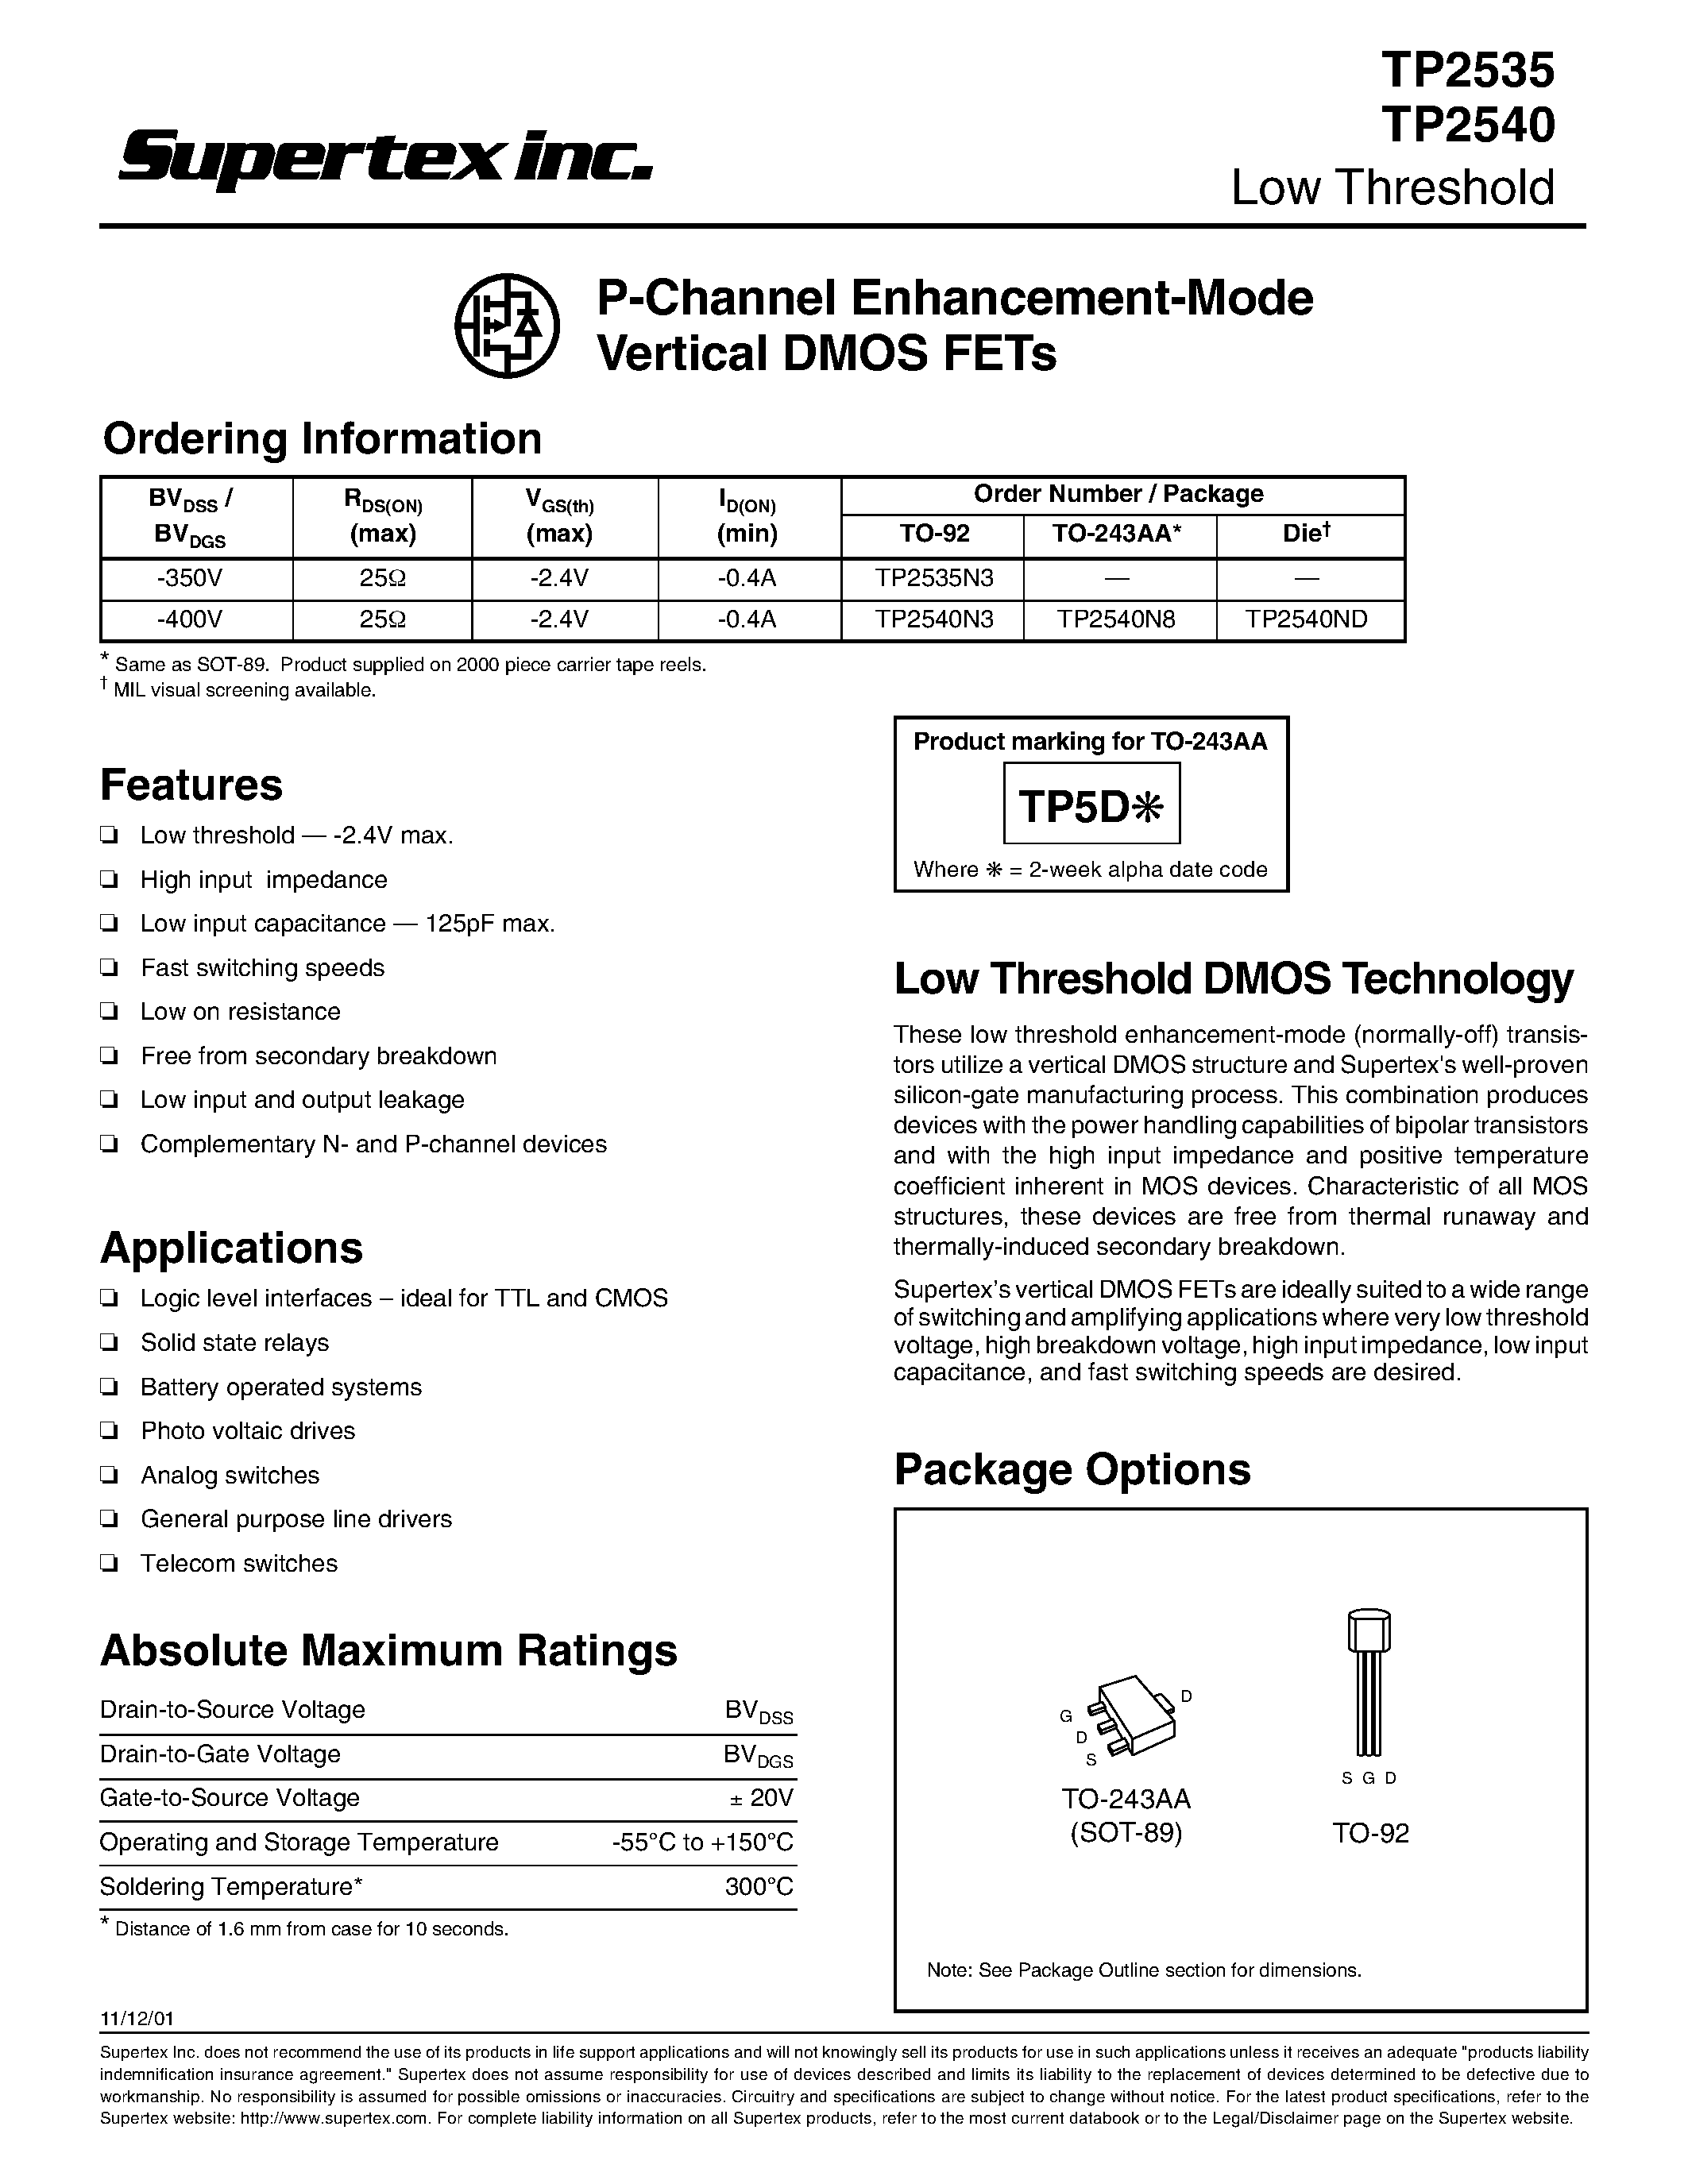 Datasheet TP2540 - P-Channel Enhancement-Mode Vertical DMOS FETs page 1